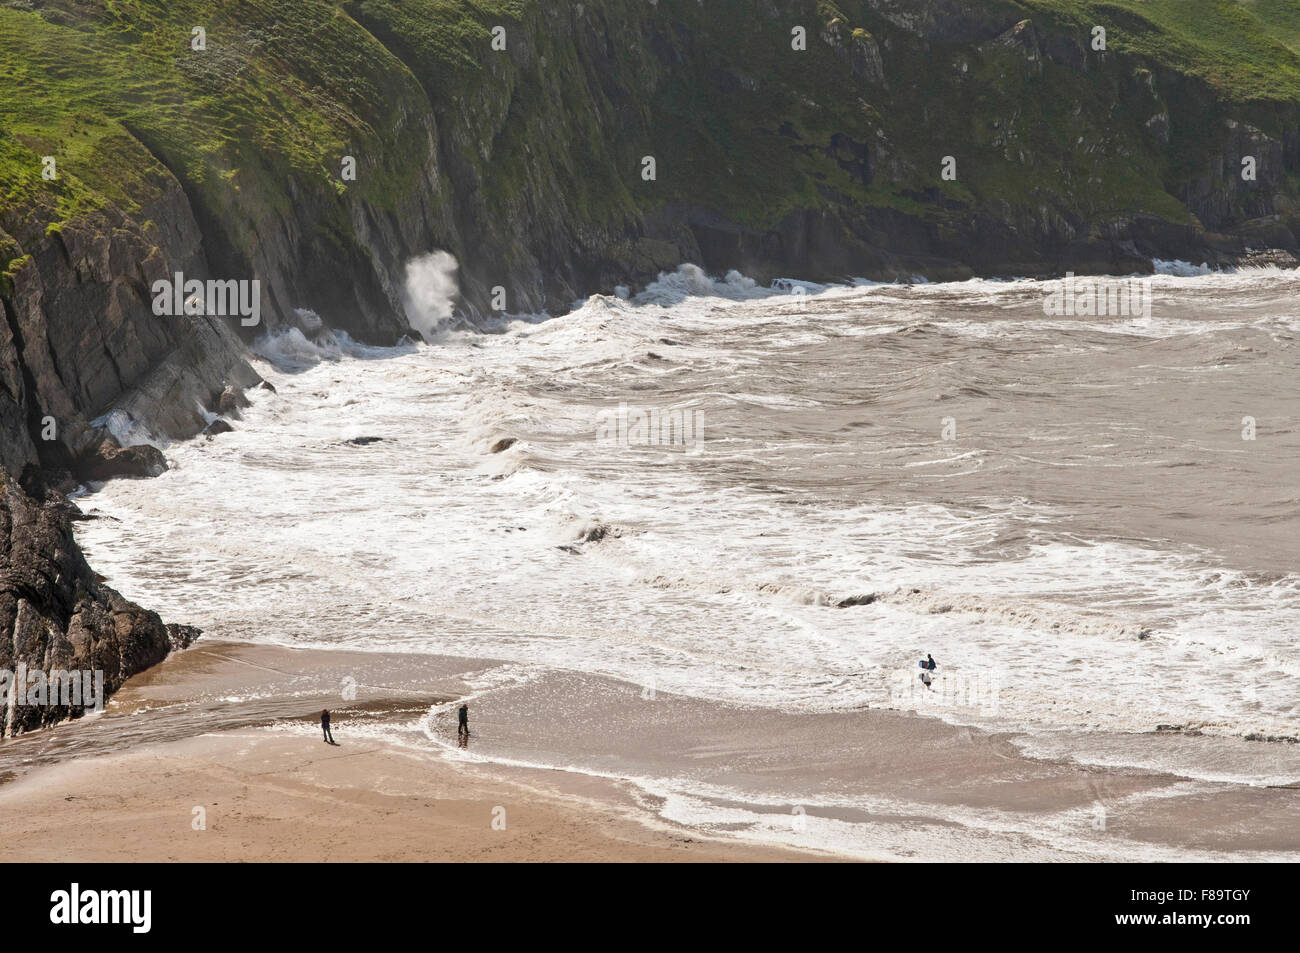 Sur la plage Mwnt Ceredigion, ou Cardiganshire, dans la côte ouest du pays de Galles, Royaume-Uni Banque D'Images